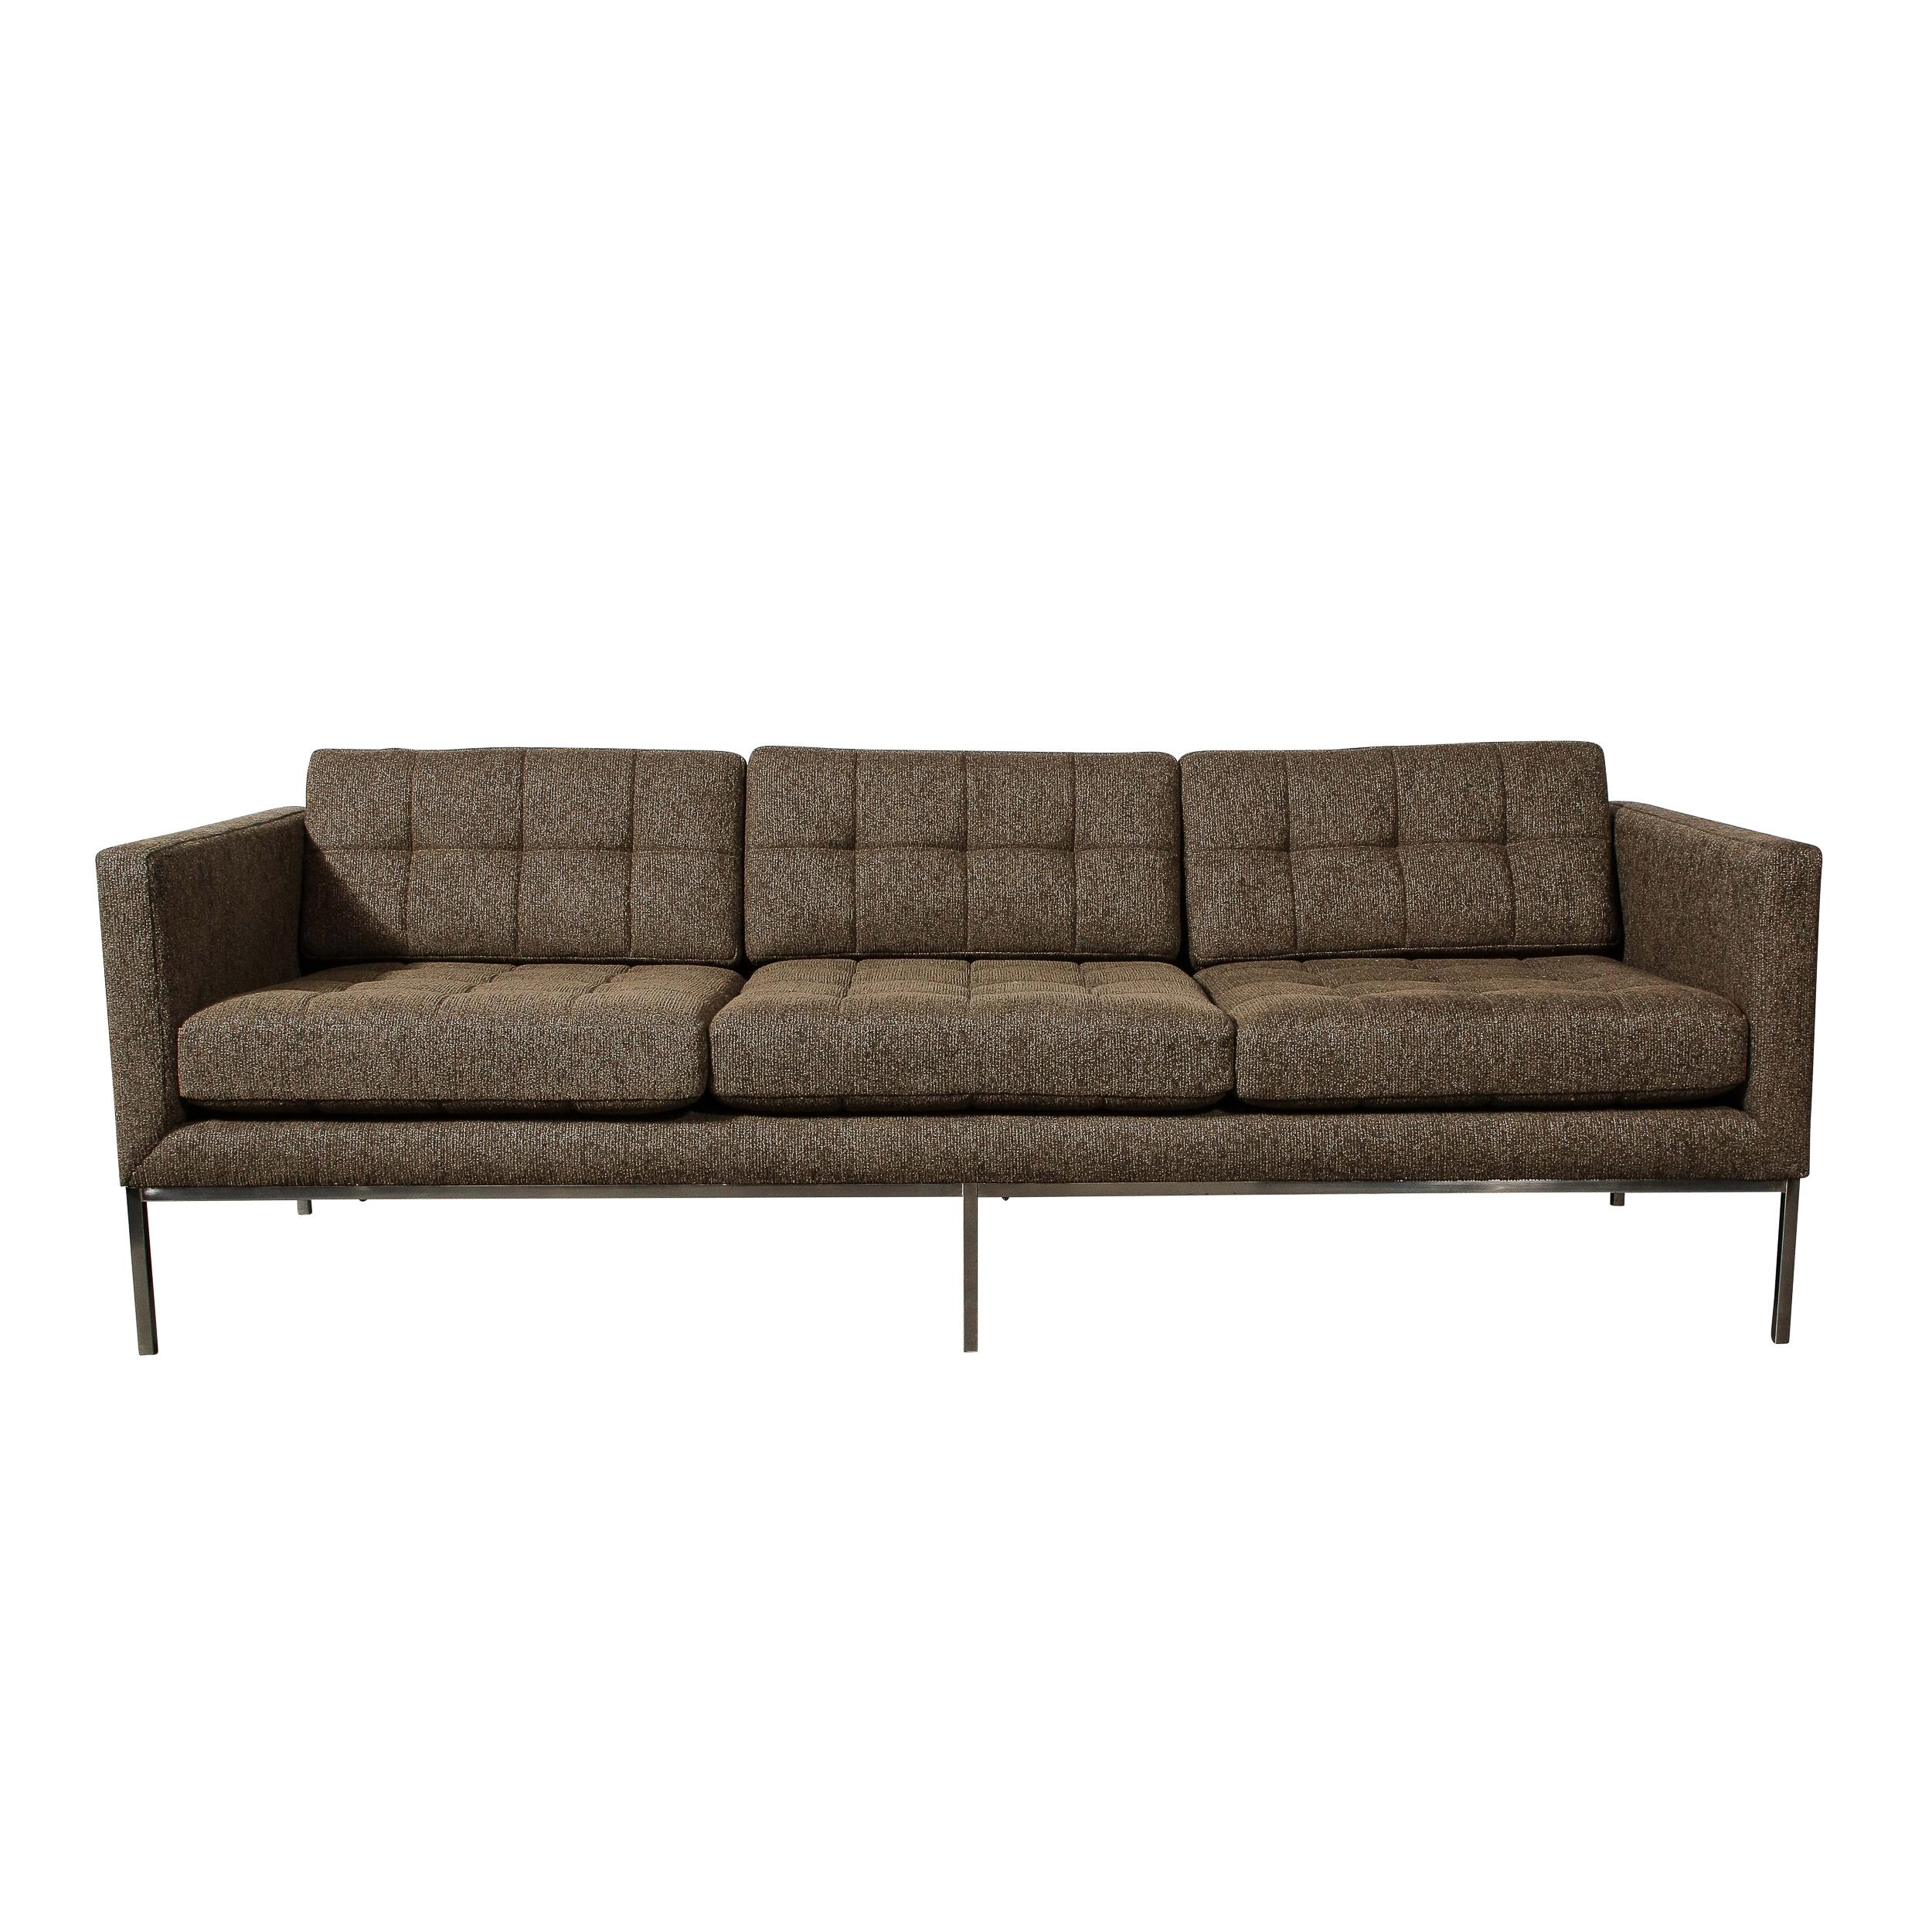 Dieses durchdachte Modernist Biscuit Tufted 'Relaxed' Sofa in Holly Hunt Polsterung ist von Florence Knoll, aus den Vereinigten Staaten, Circa 2000. Der Sofakorpus mit seinem verchromten Gestell und den minimalen, geradlinigen Säulen ist mit einem